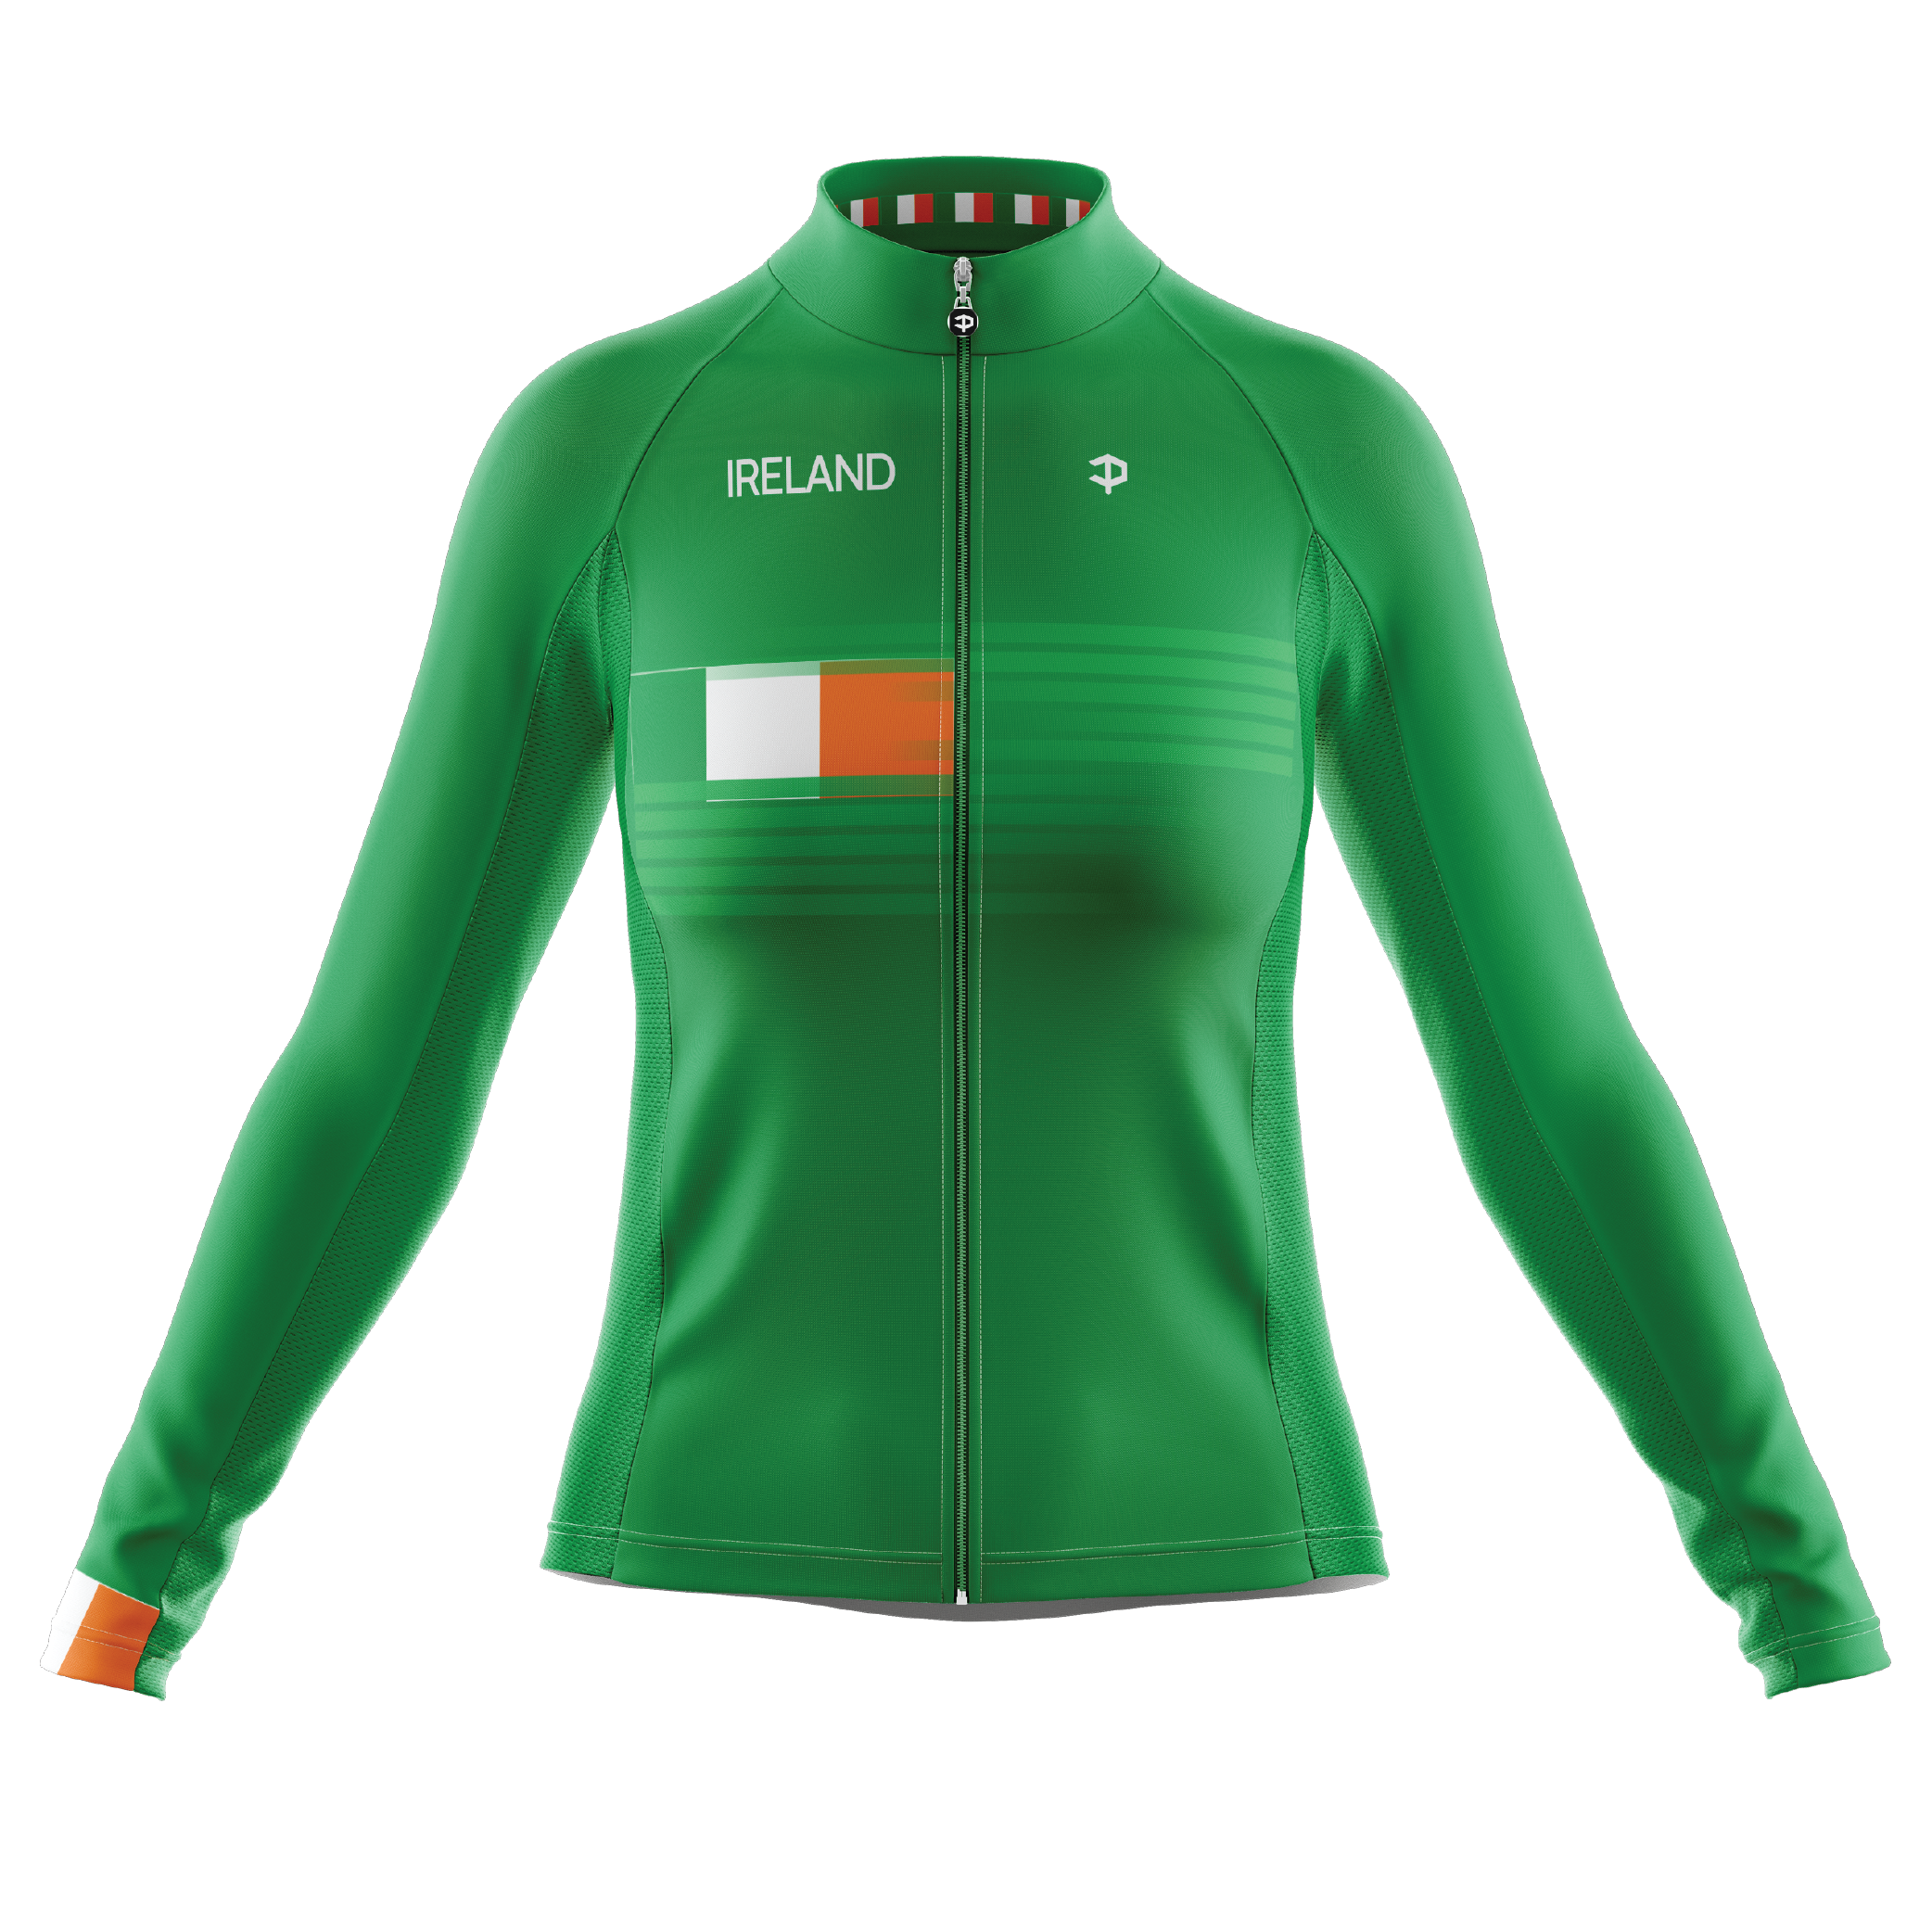 Ireland V3 Long Sleeve Cycling Jersey